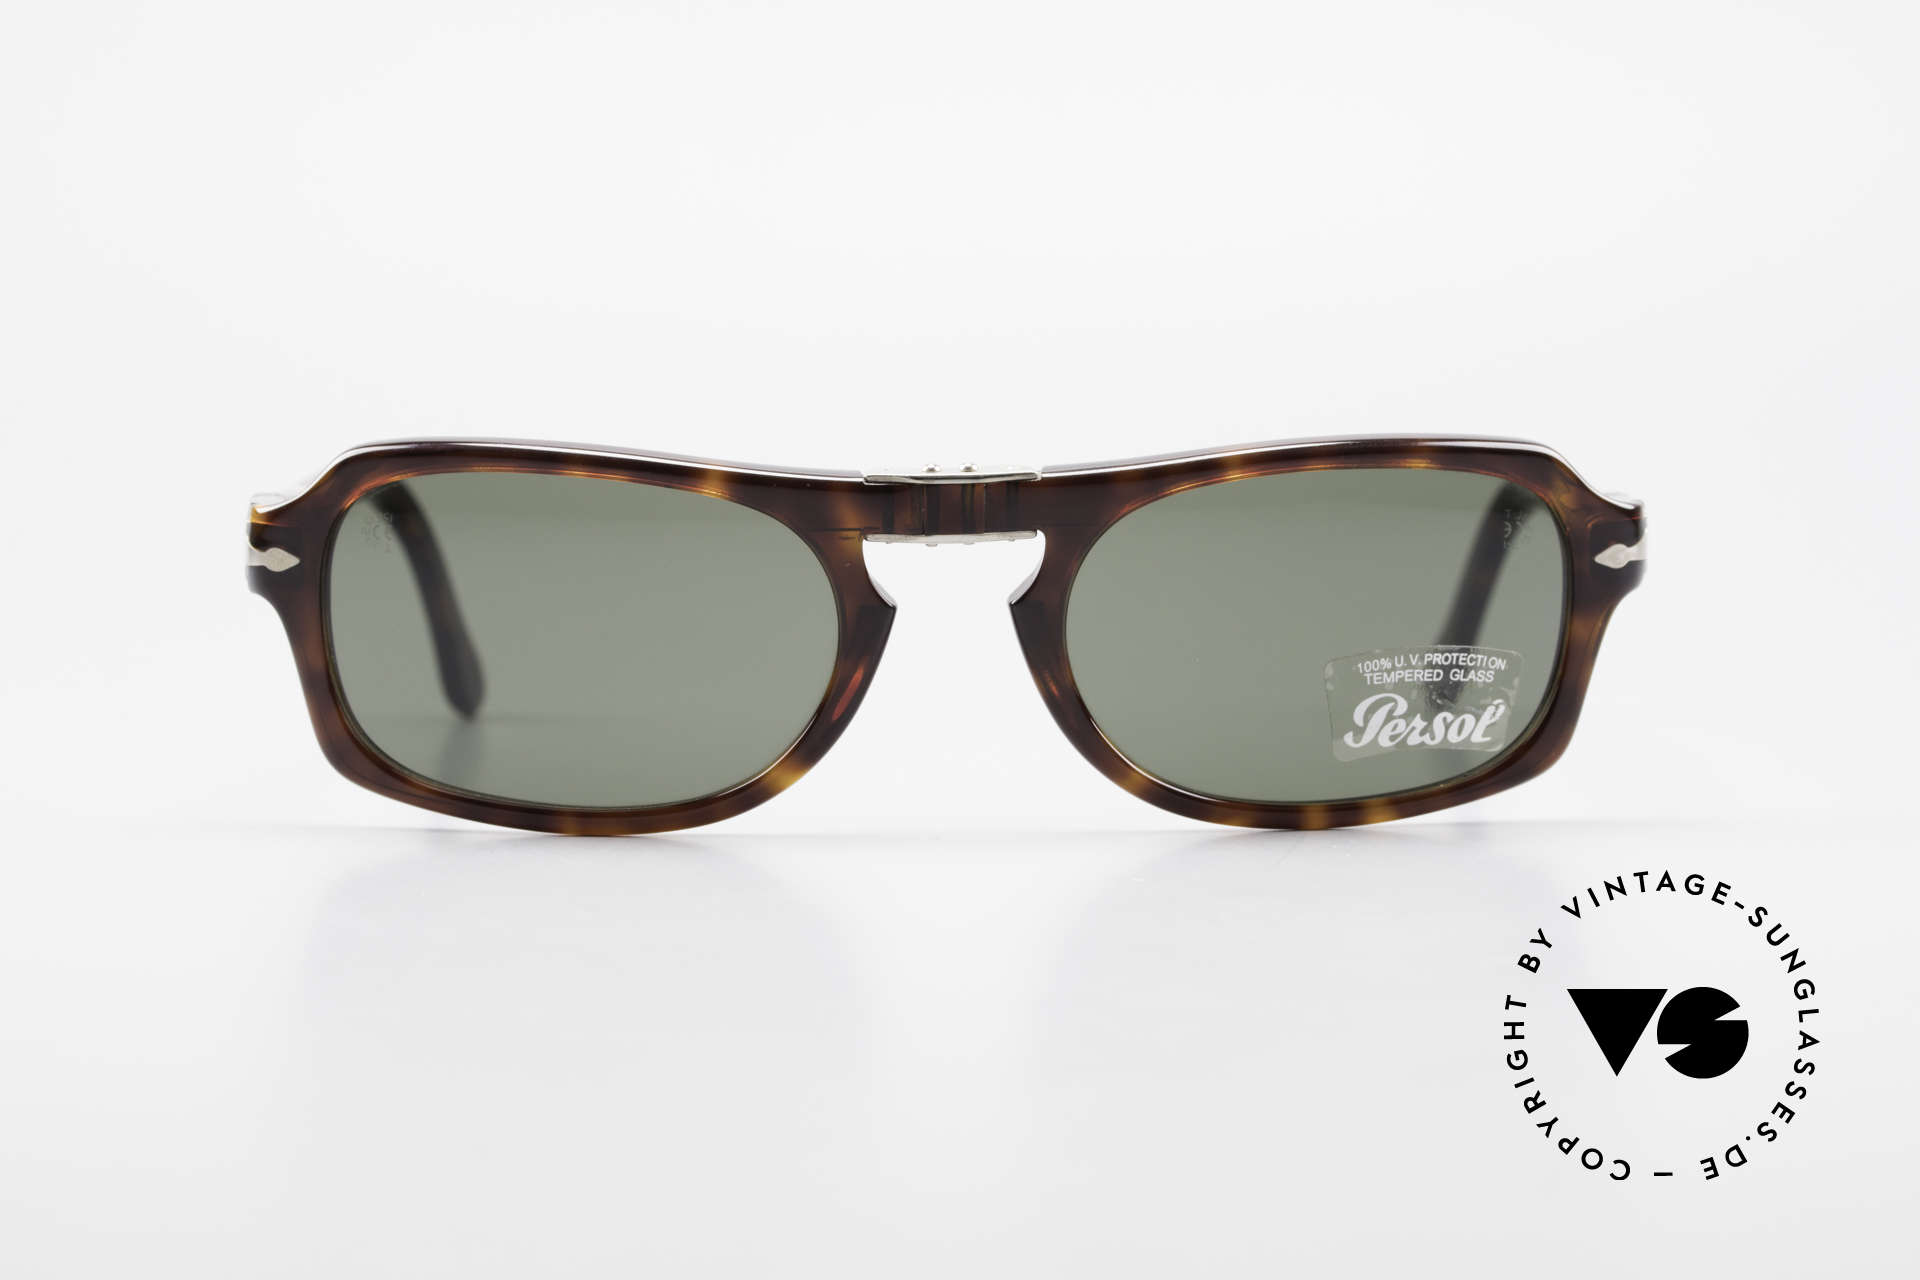 www.vintage-sunglasses-shop.com